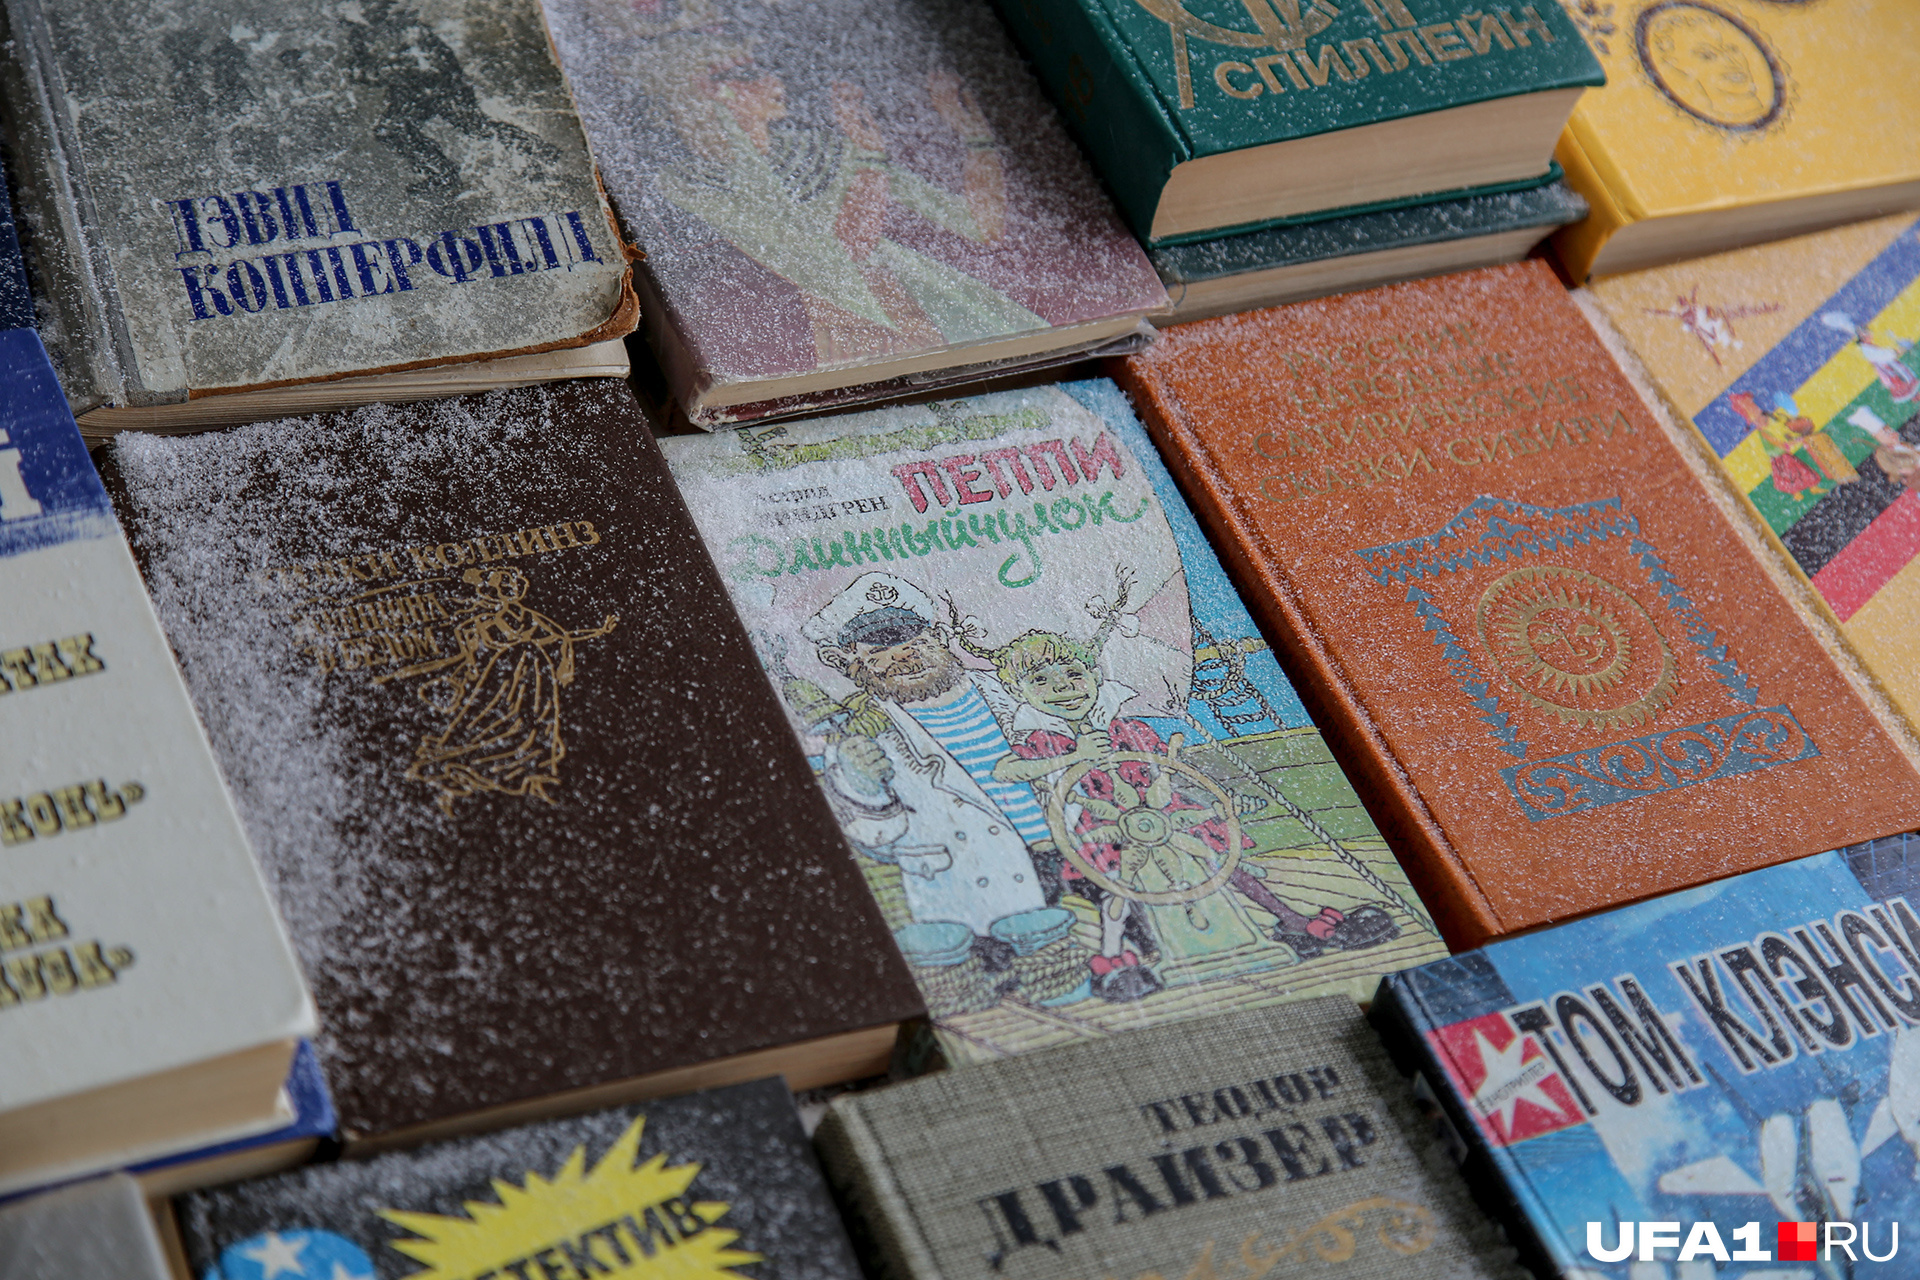 Среди детективов и фантастики затесались детская литература и книги по эзотерике